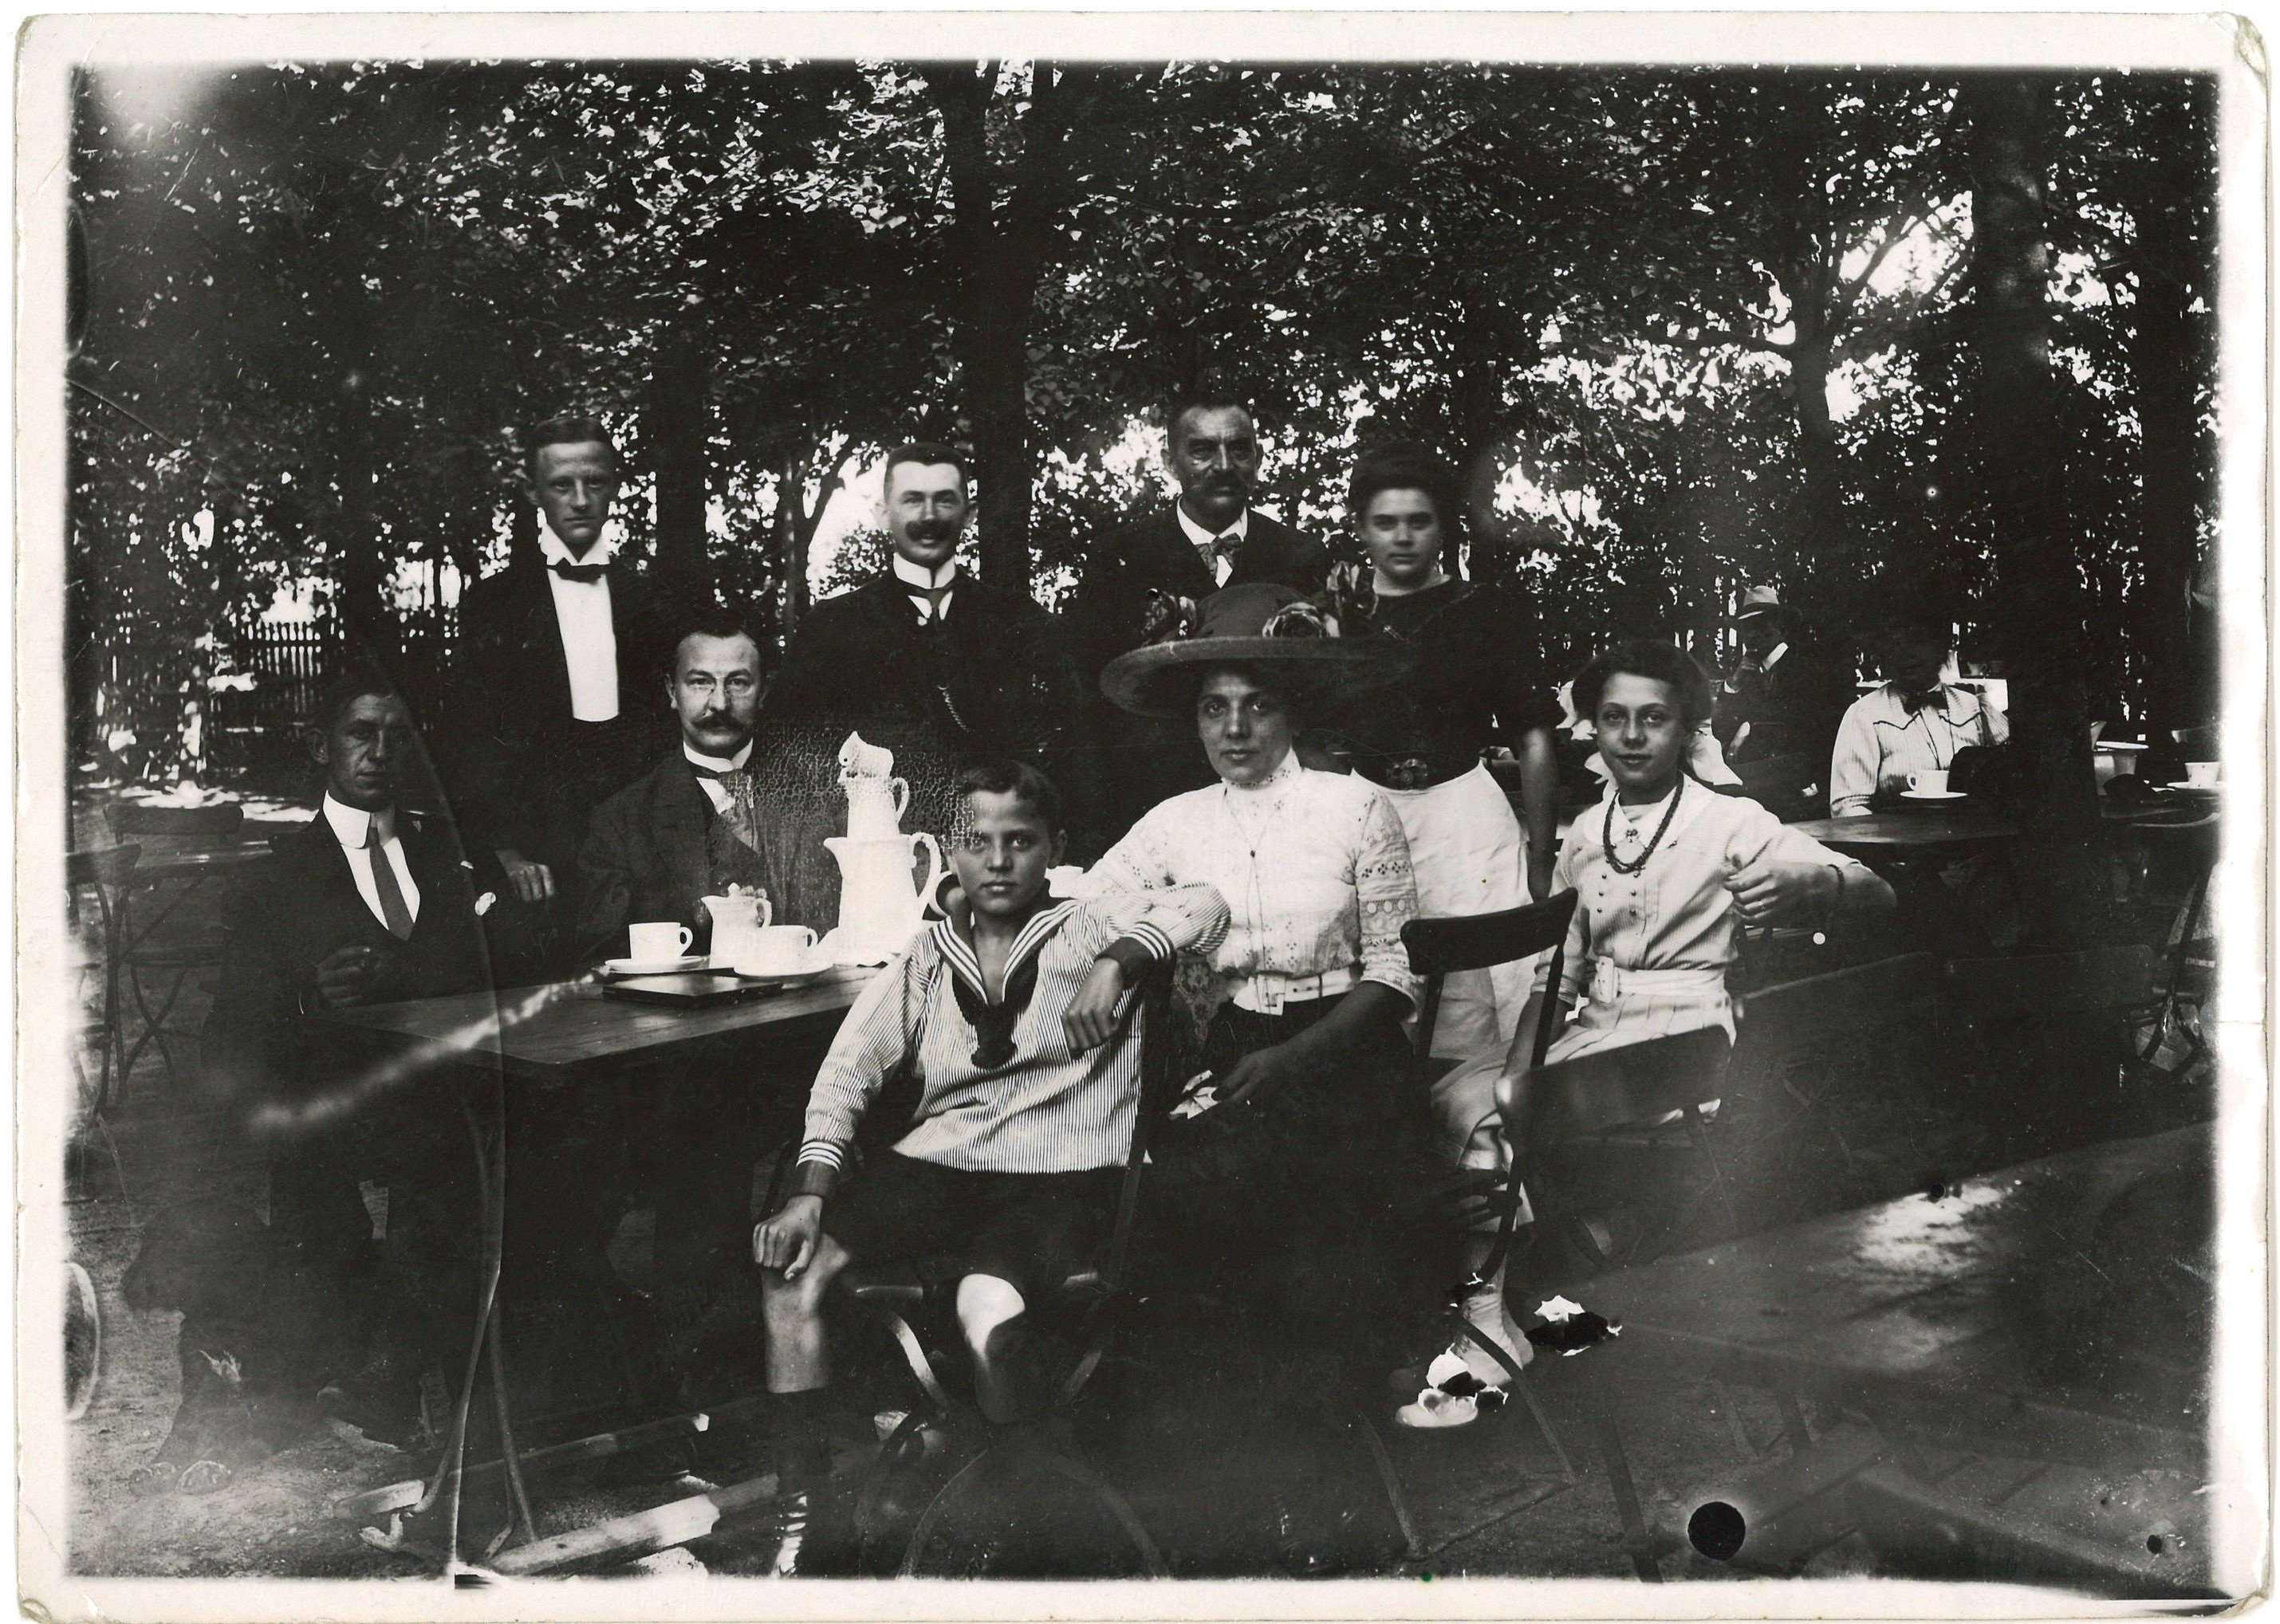 Berlin-Lichtenrade: Kaffeetafel in Heinrich Sommers Gartenrestaurant 1912/13 (Landesgeschichtliche Vereinigung für die Mark Brandenburg e.V., Archiv CC BY)